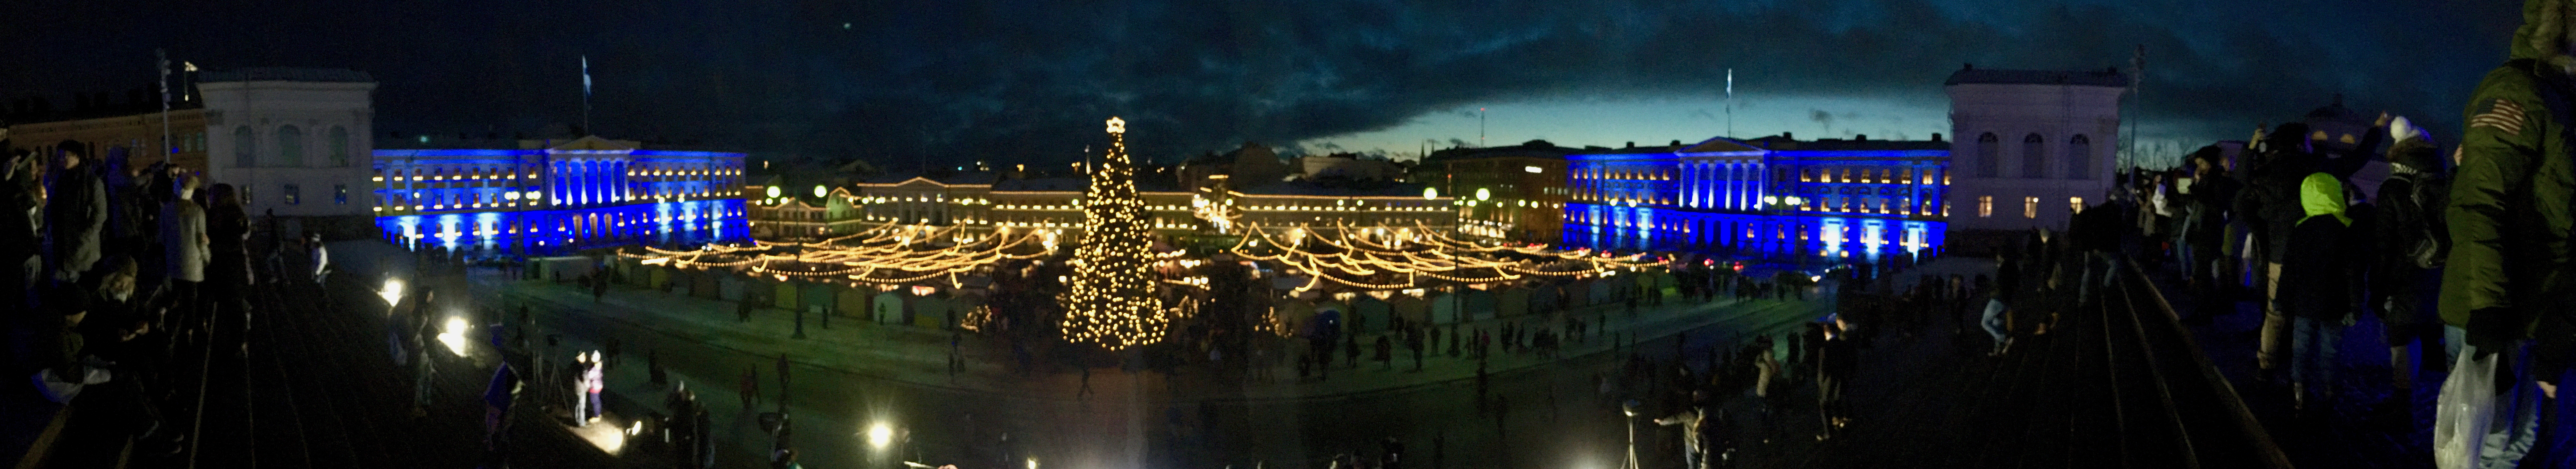 Finland Senate Square Xmas Market Helsinki